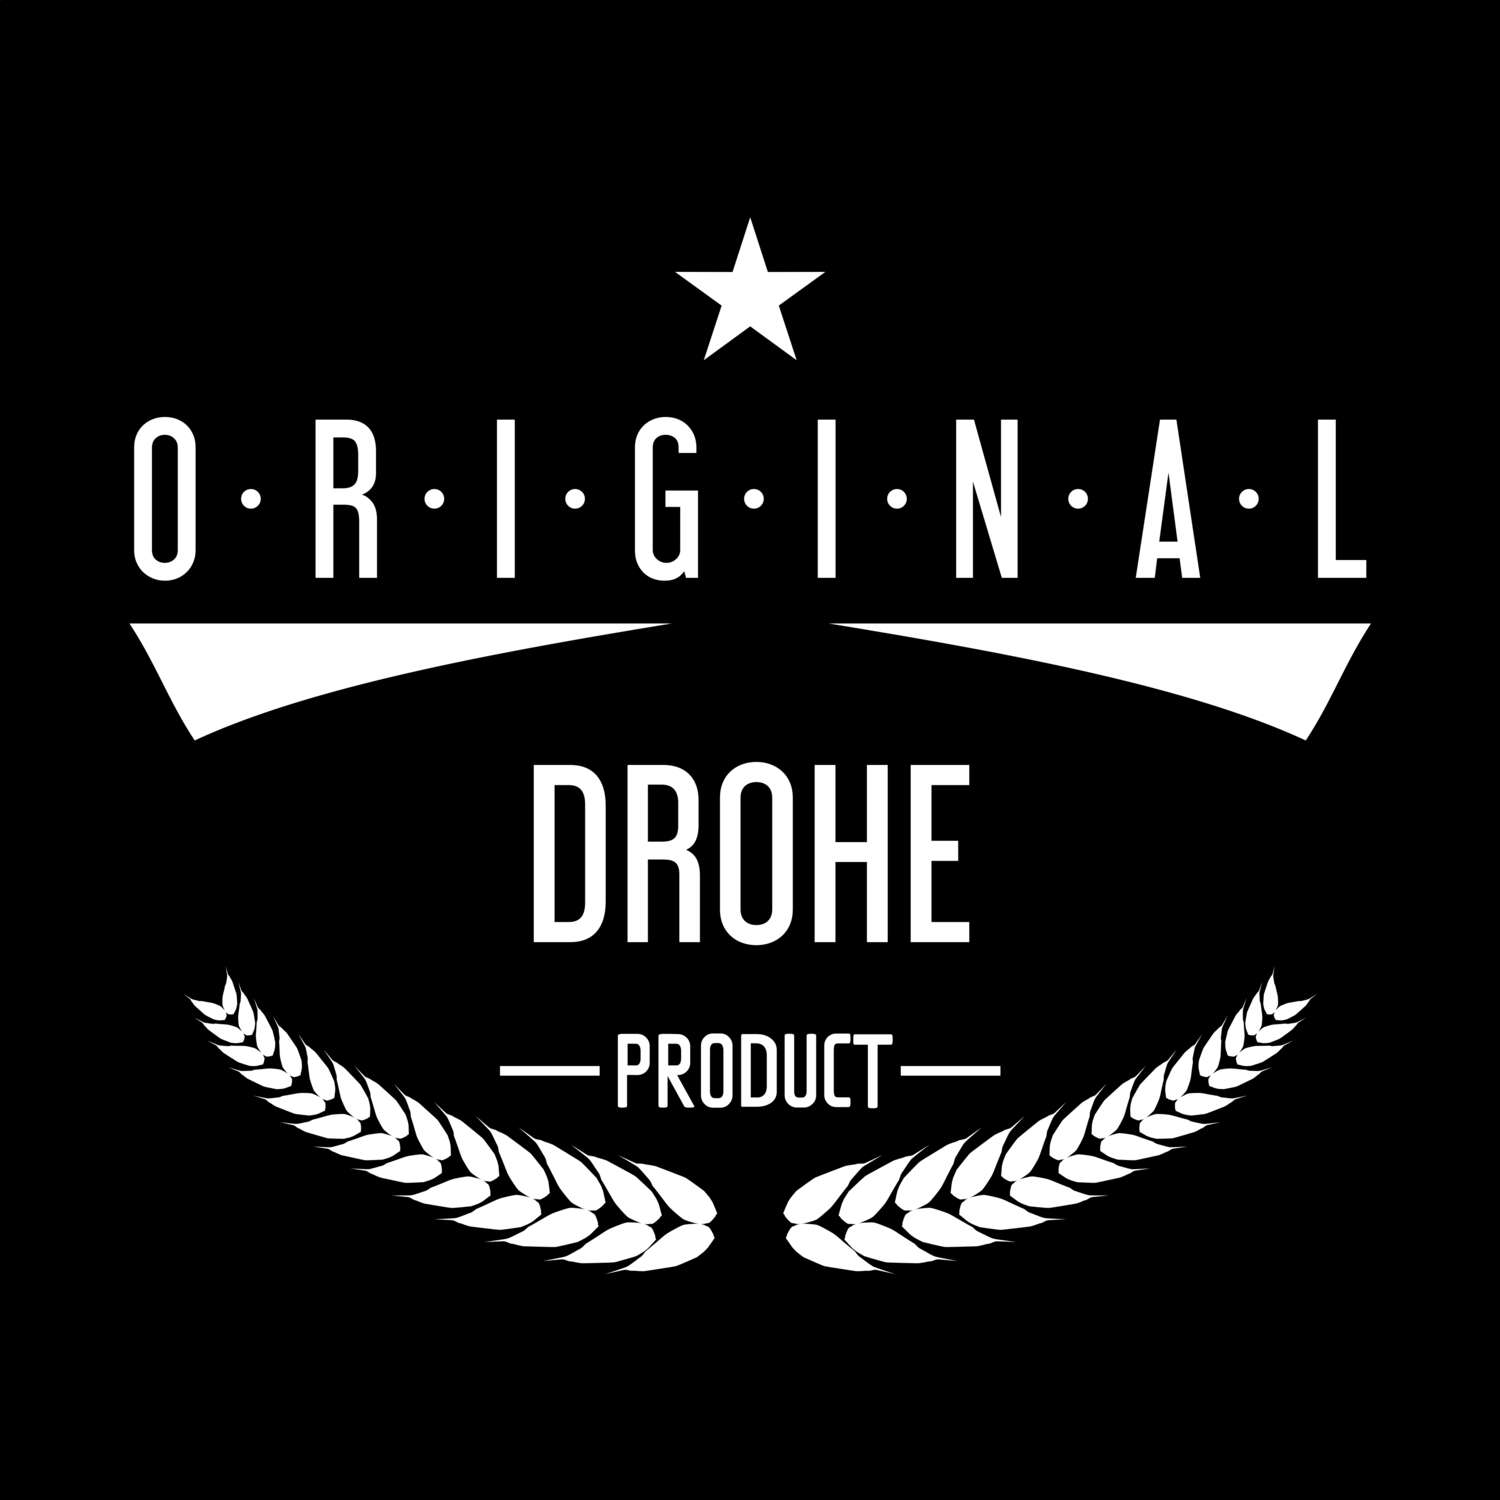 Drohe T-Shirt »Original Product«